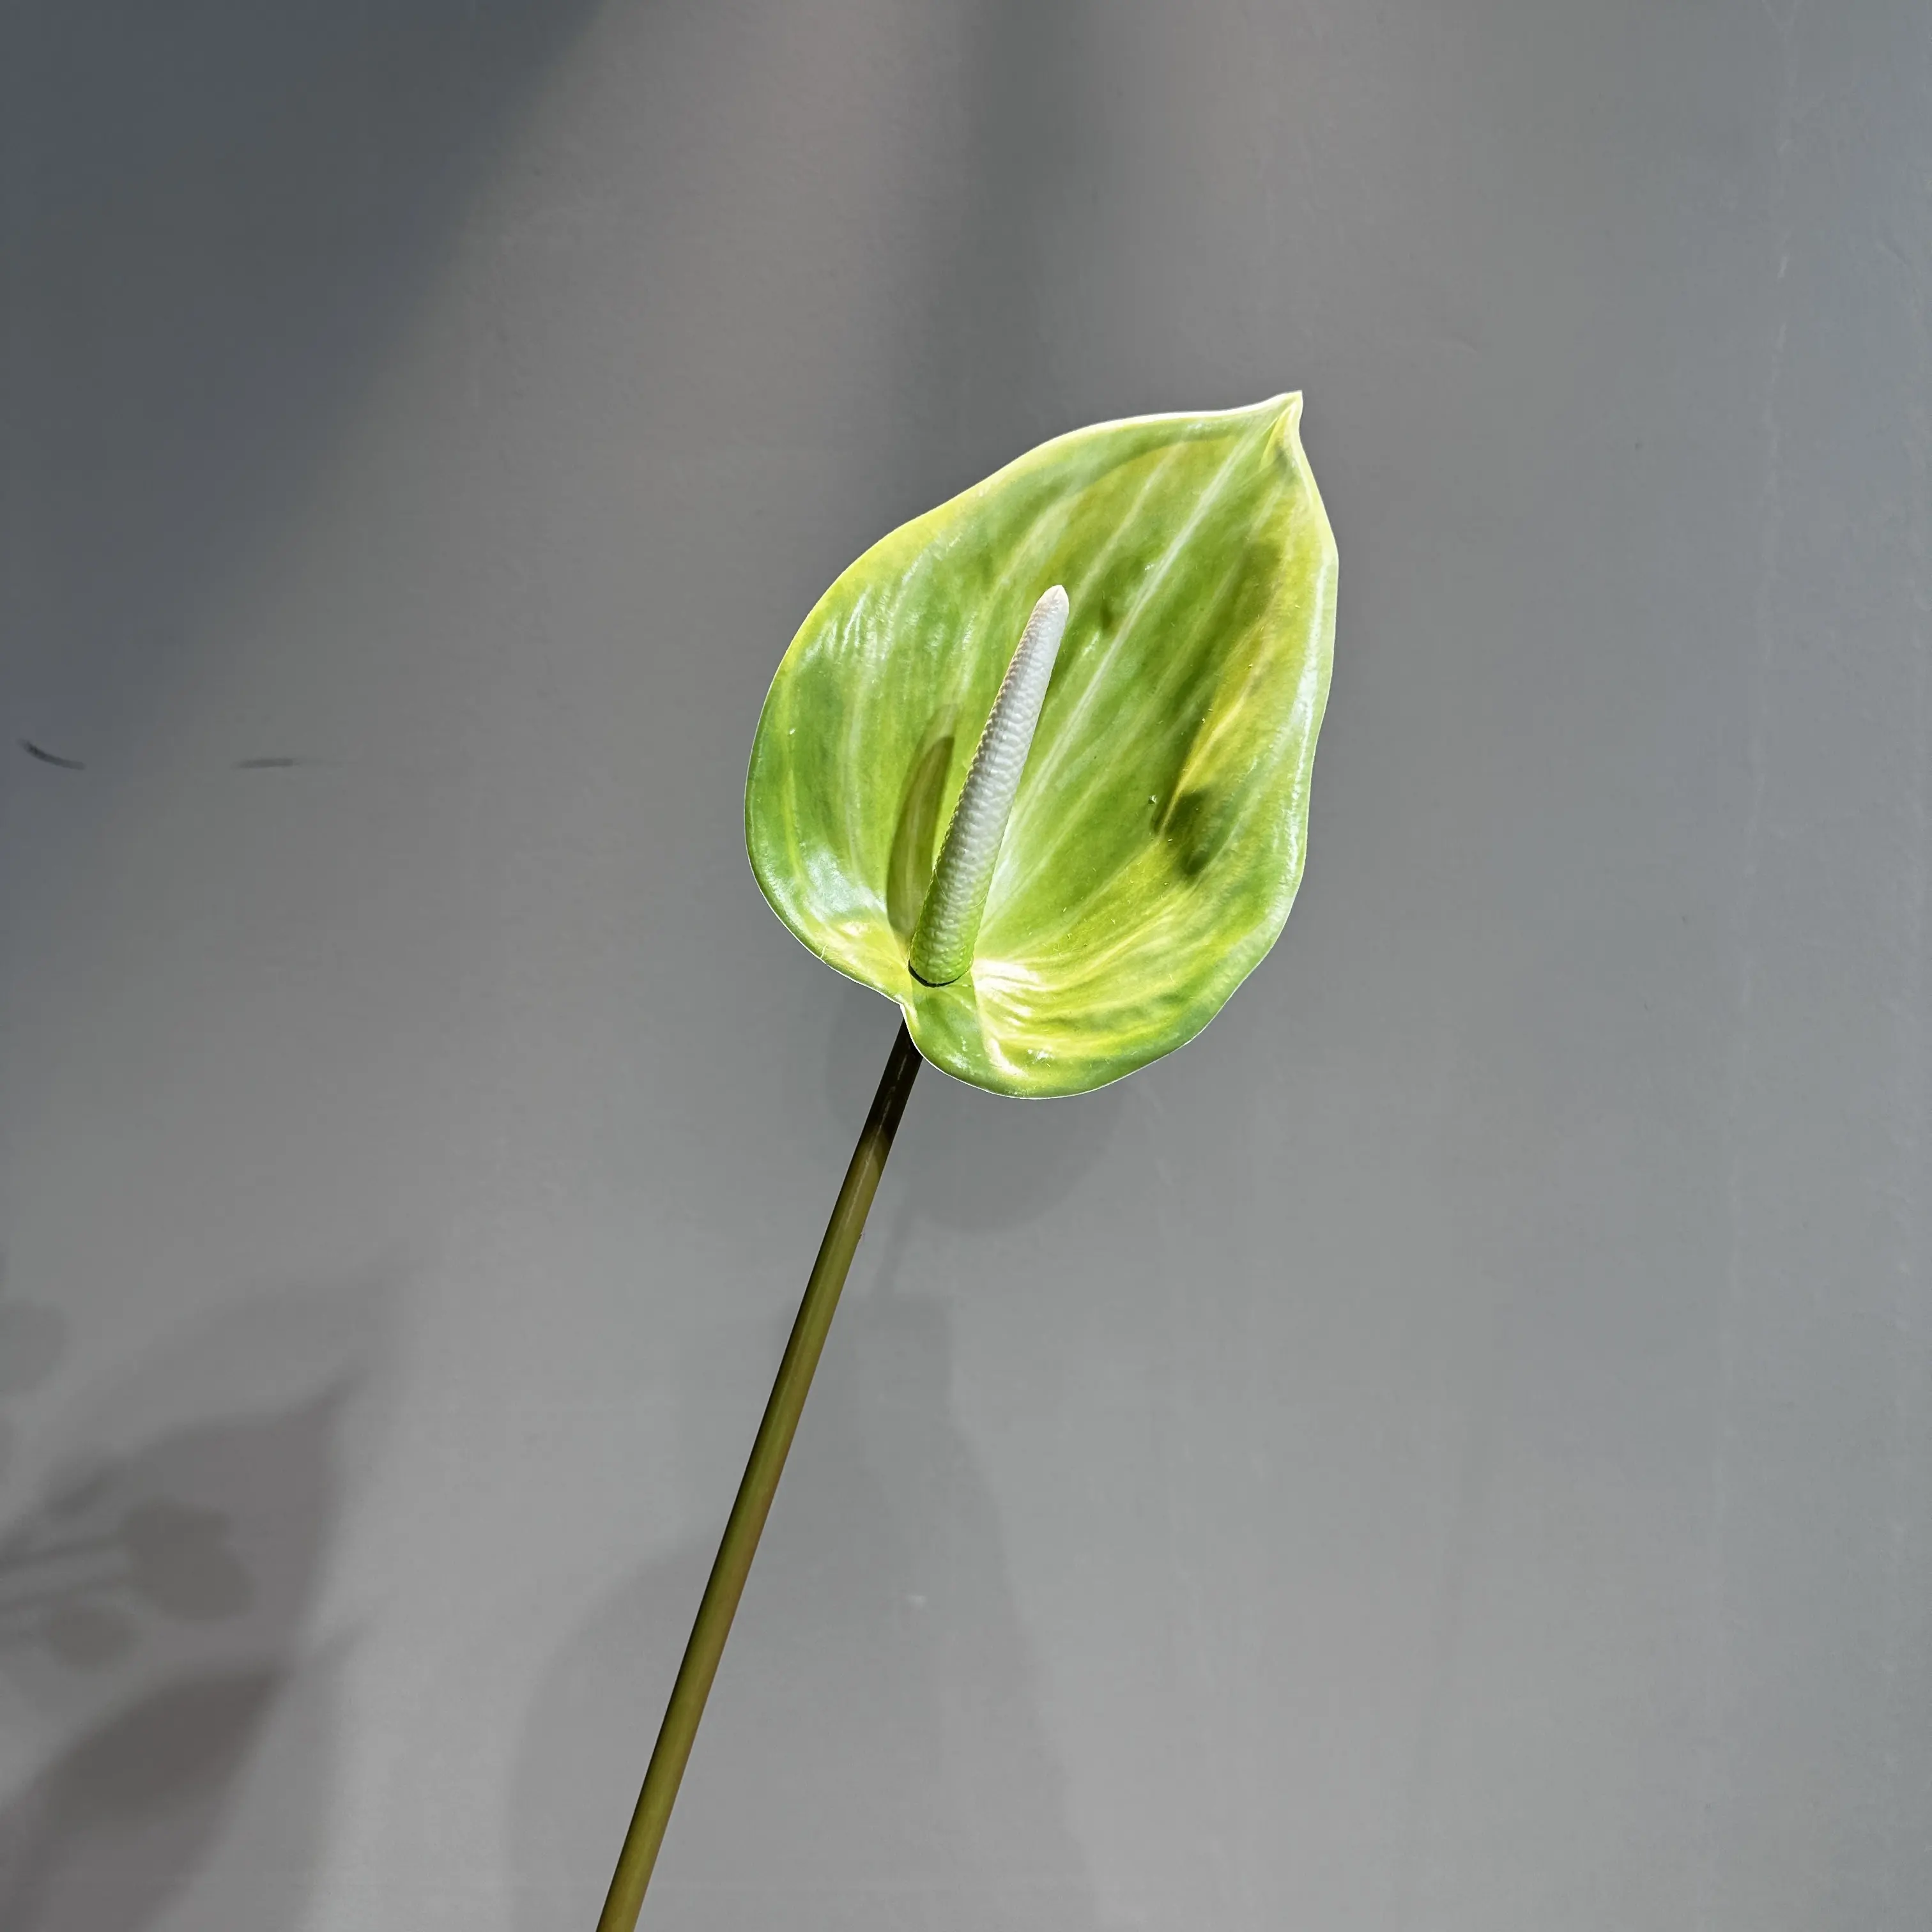 زهور اصطناعية للبيع بالجملة من calla Lily ديكور ساخن لحفلات الزفاف للمنزل للمكتب زهور برائحة جميلة